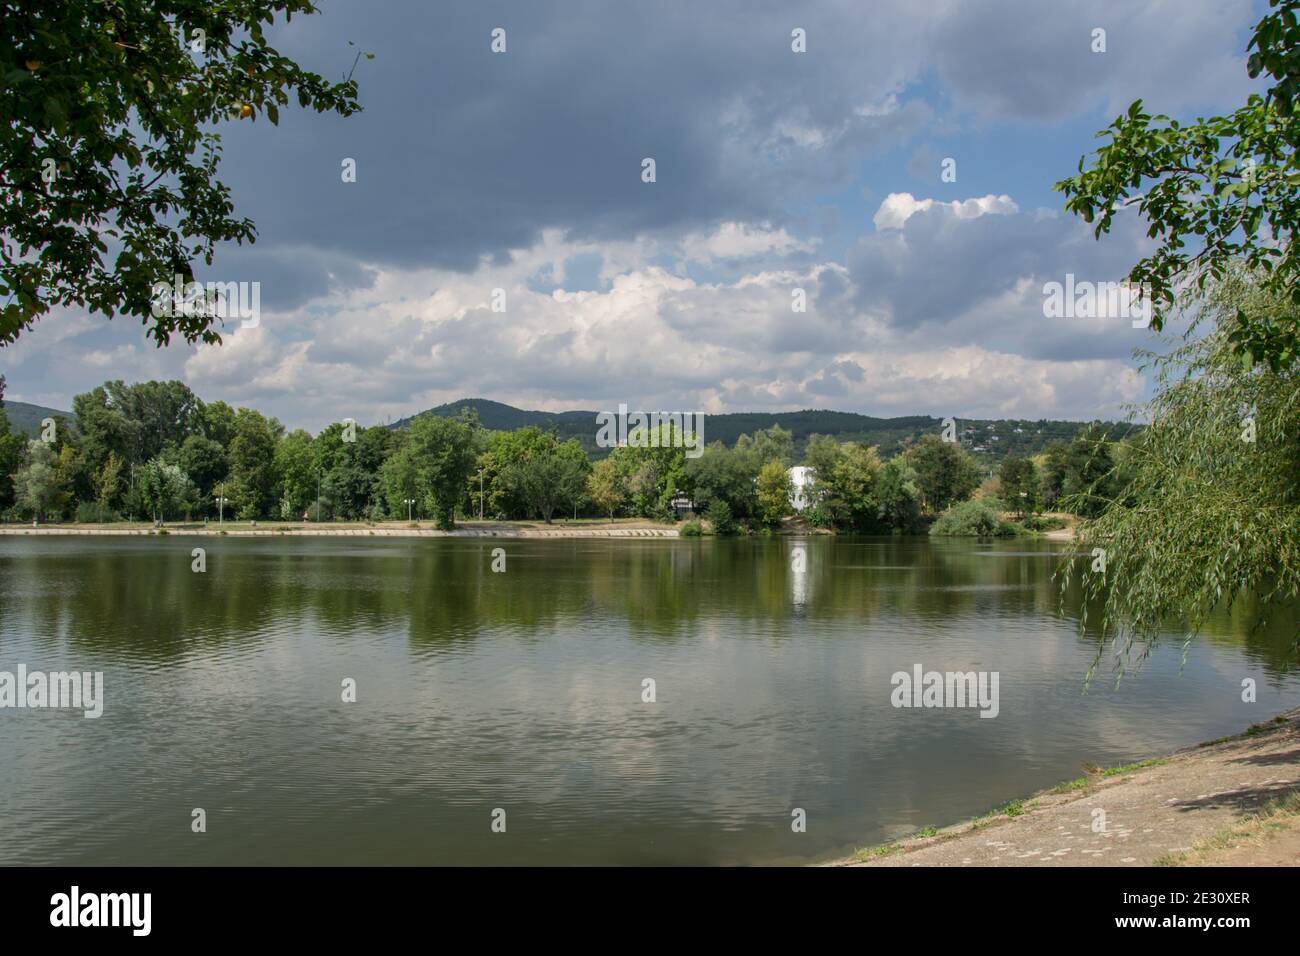 Schöne friedliche Natur, Bäume und Pflanzen auf einem See, Sommersaison, Reflexion im Wasser, Zagorka See, Stara Zagora, Bulgarien Stockfoto